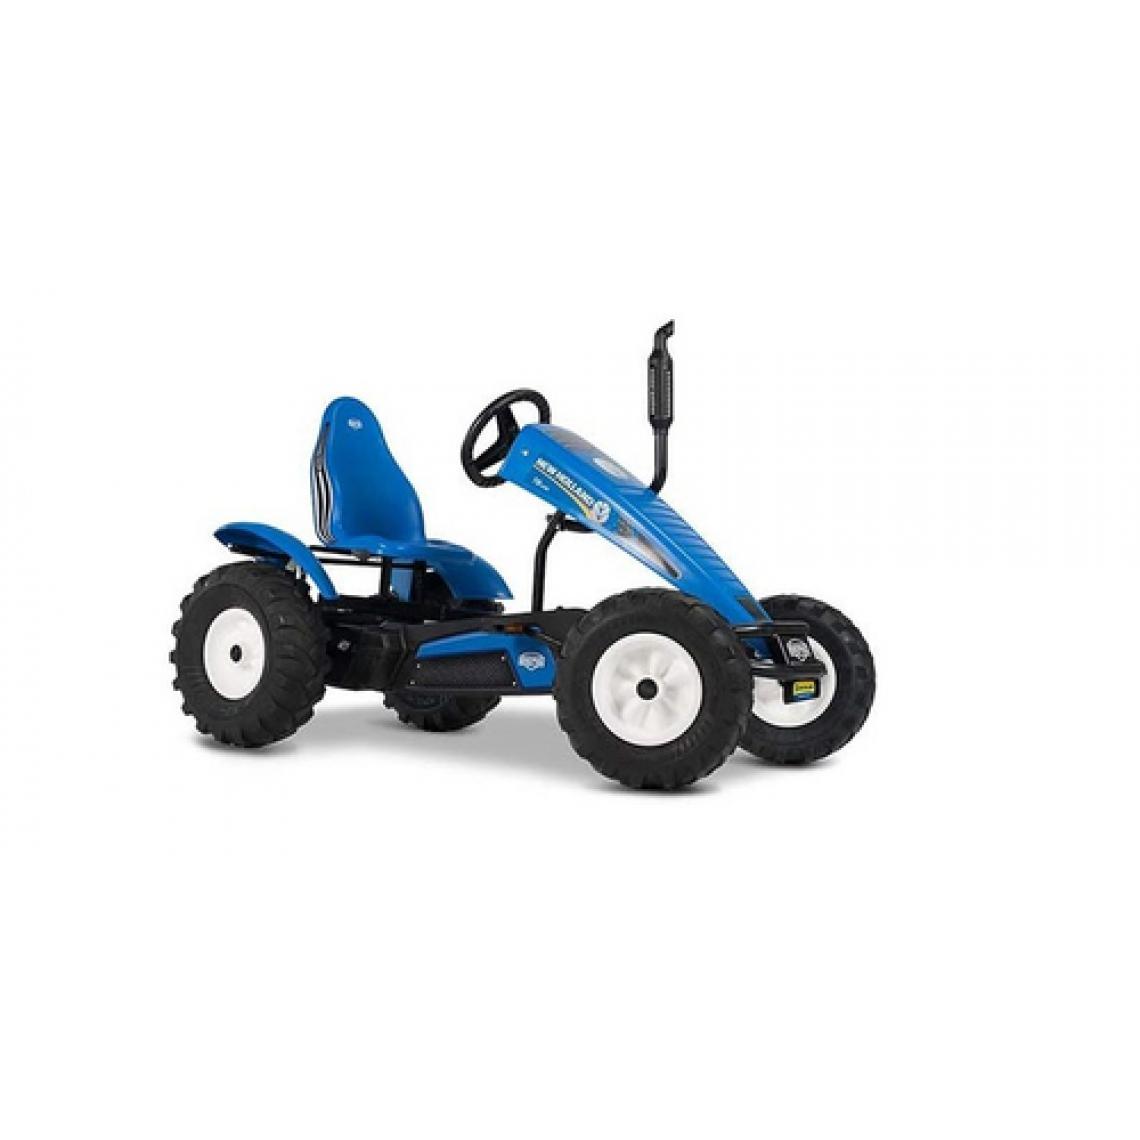 Berg - BERG Kart à pédales électrique New Holland bleu - Véhicule à pédales